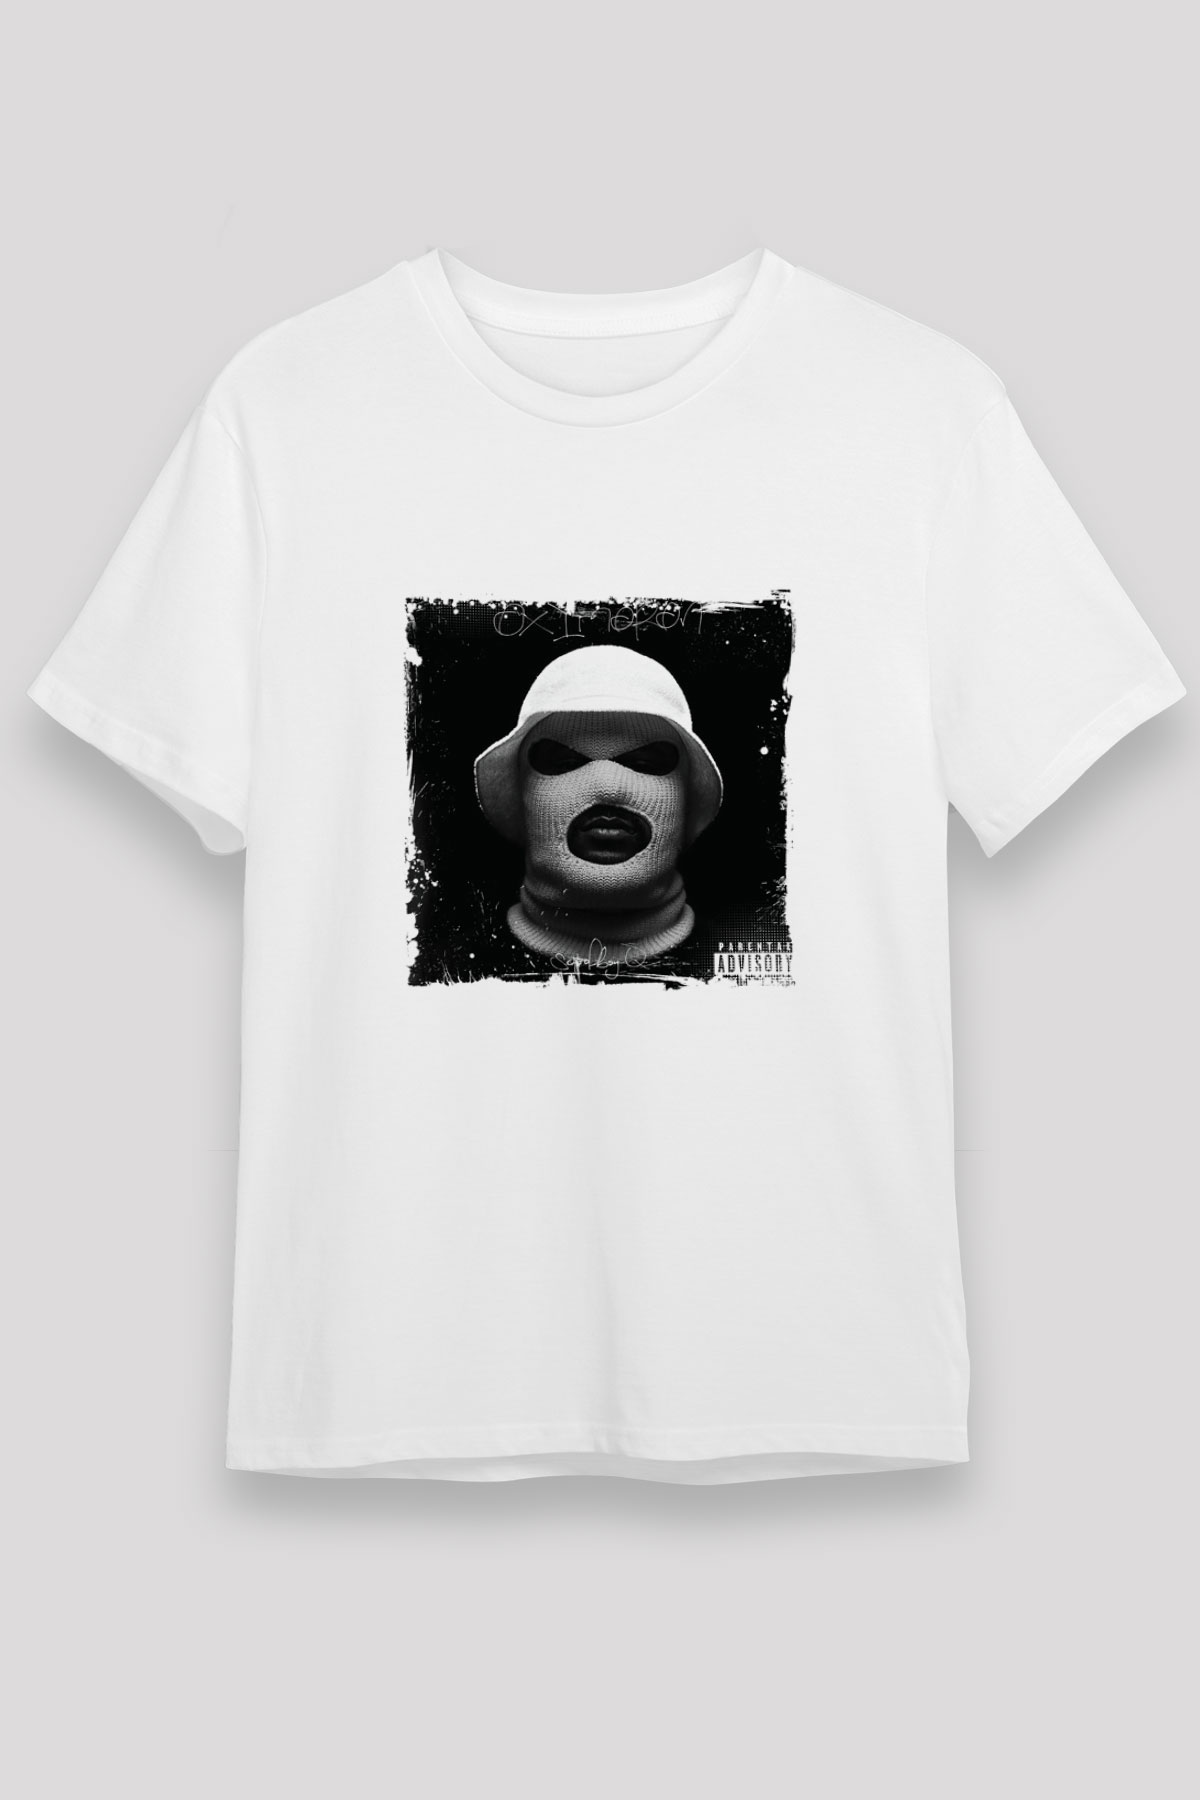 Schoolboy Q T shirt,Hip Hop,Rap Tshirt 07/